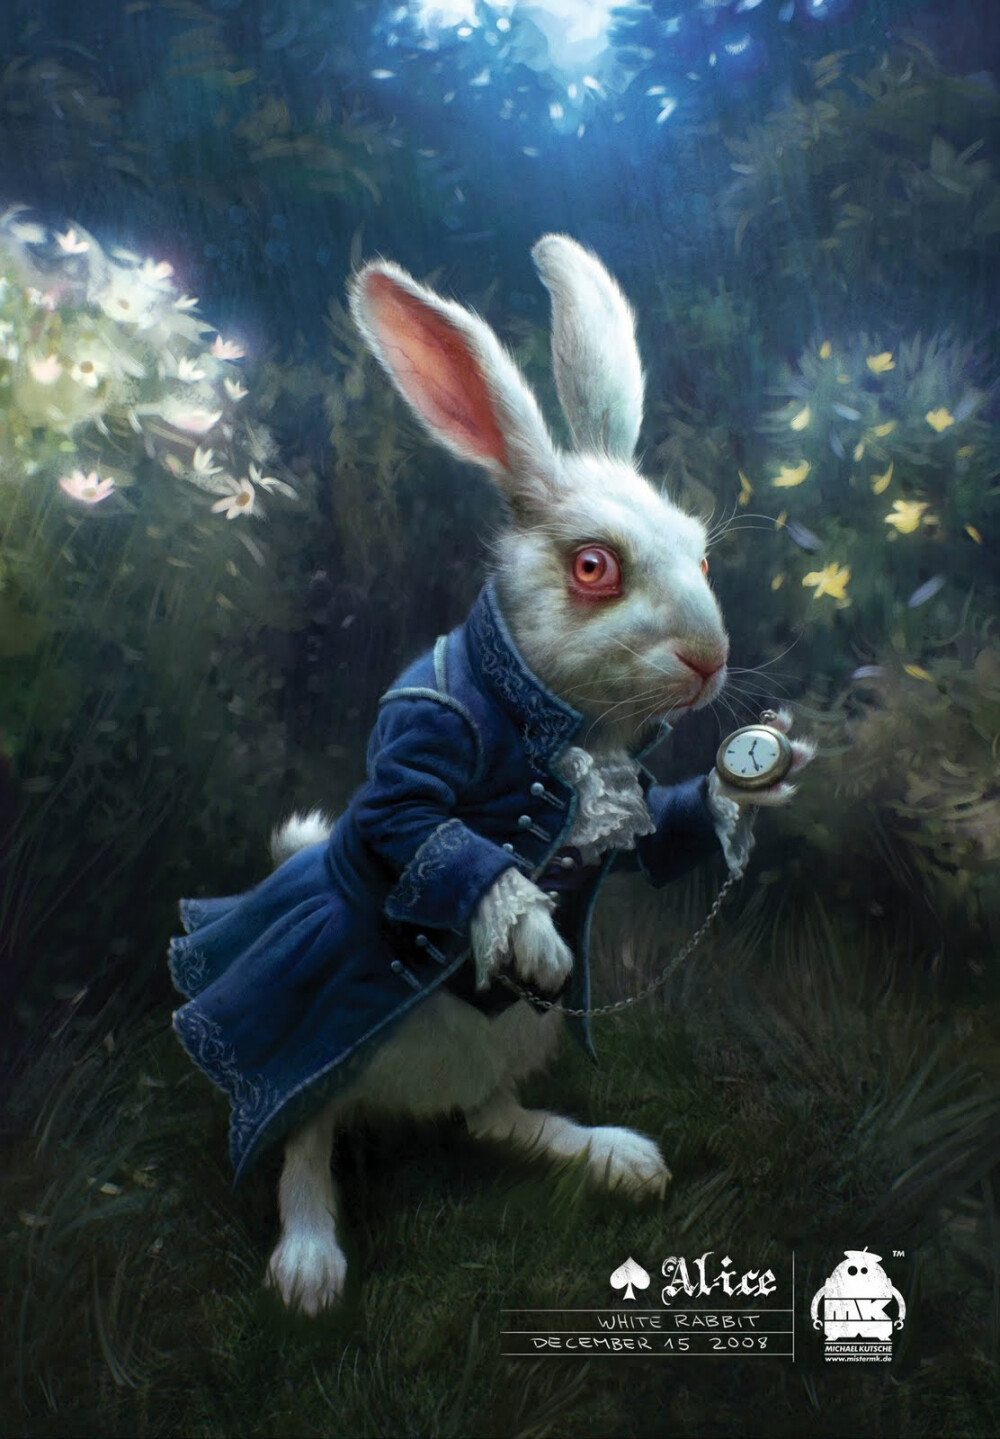 爱丽丝梦游仙境 的剧照 兔子先生蓝色天鹅绒外套,绣花,蕾丝边